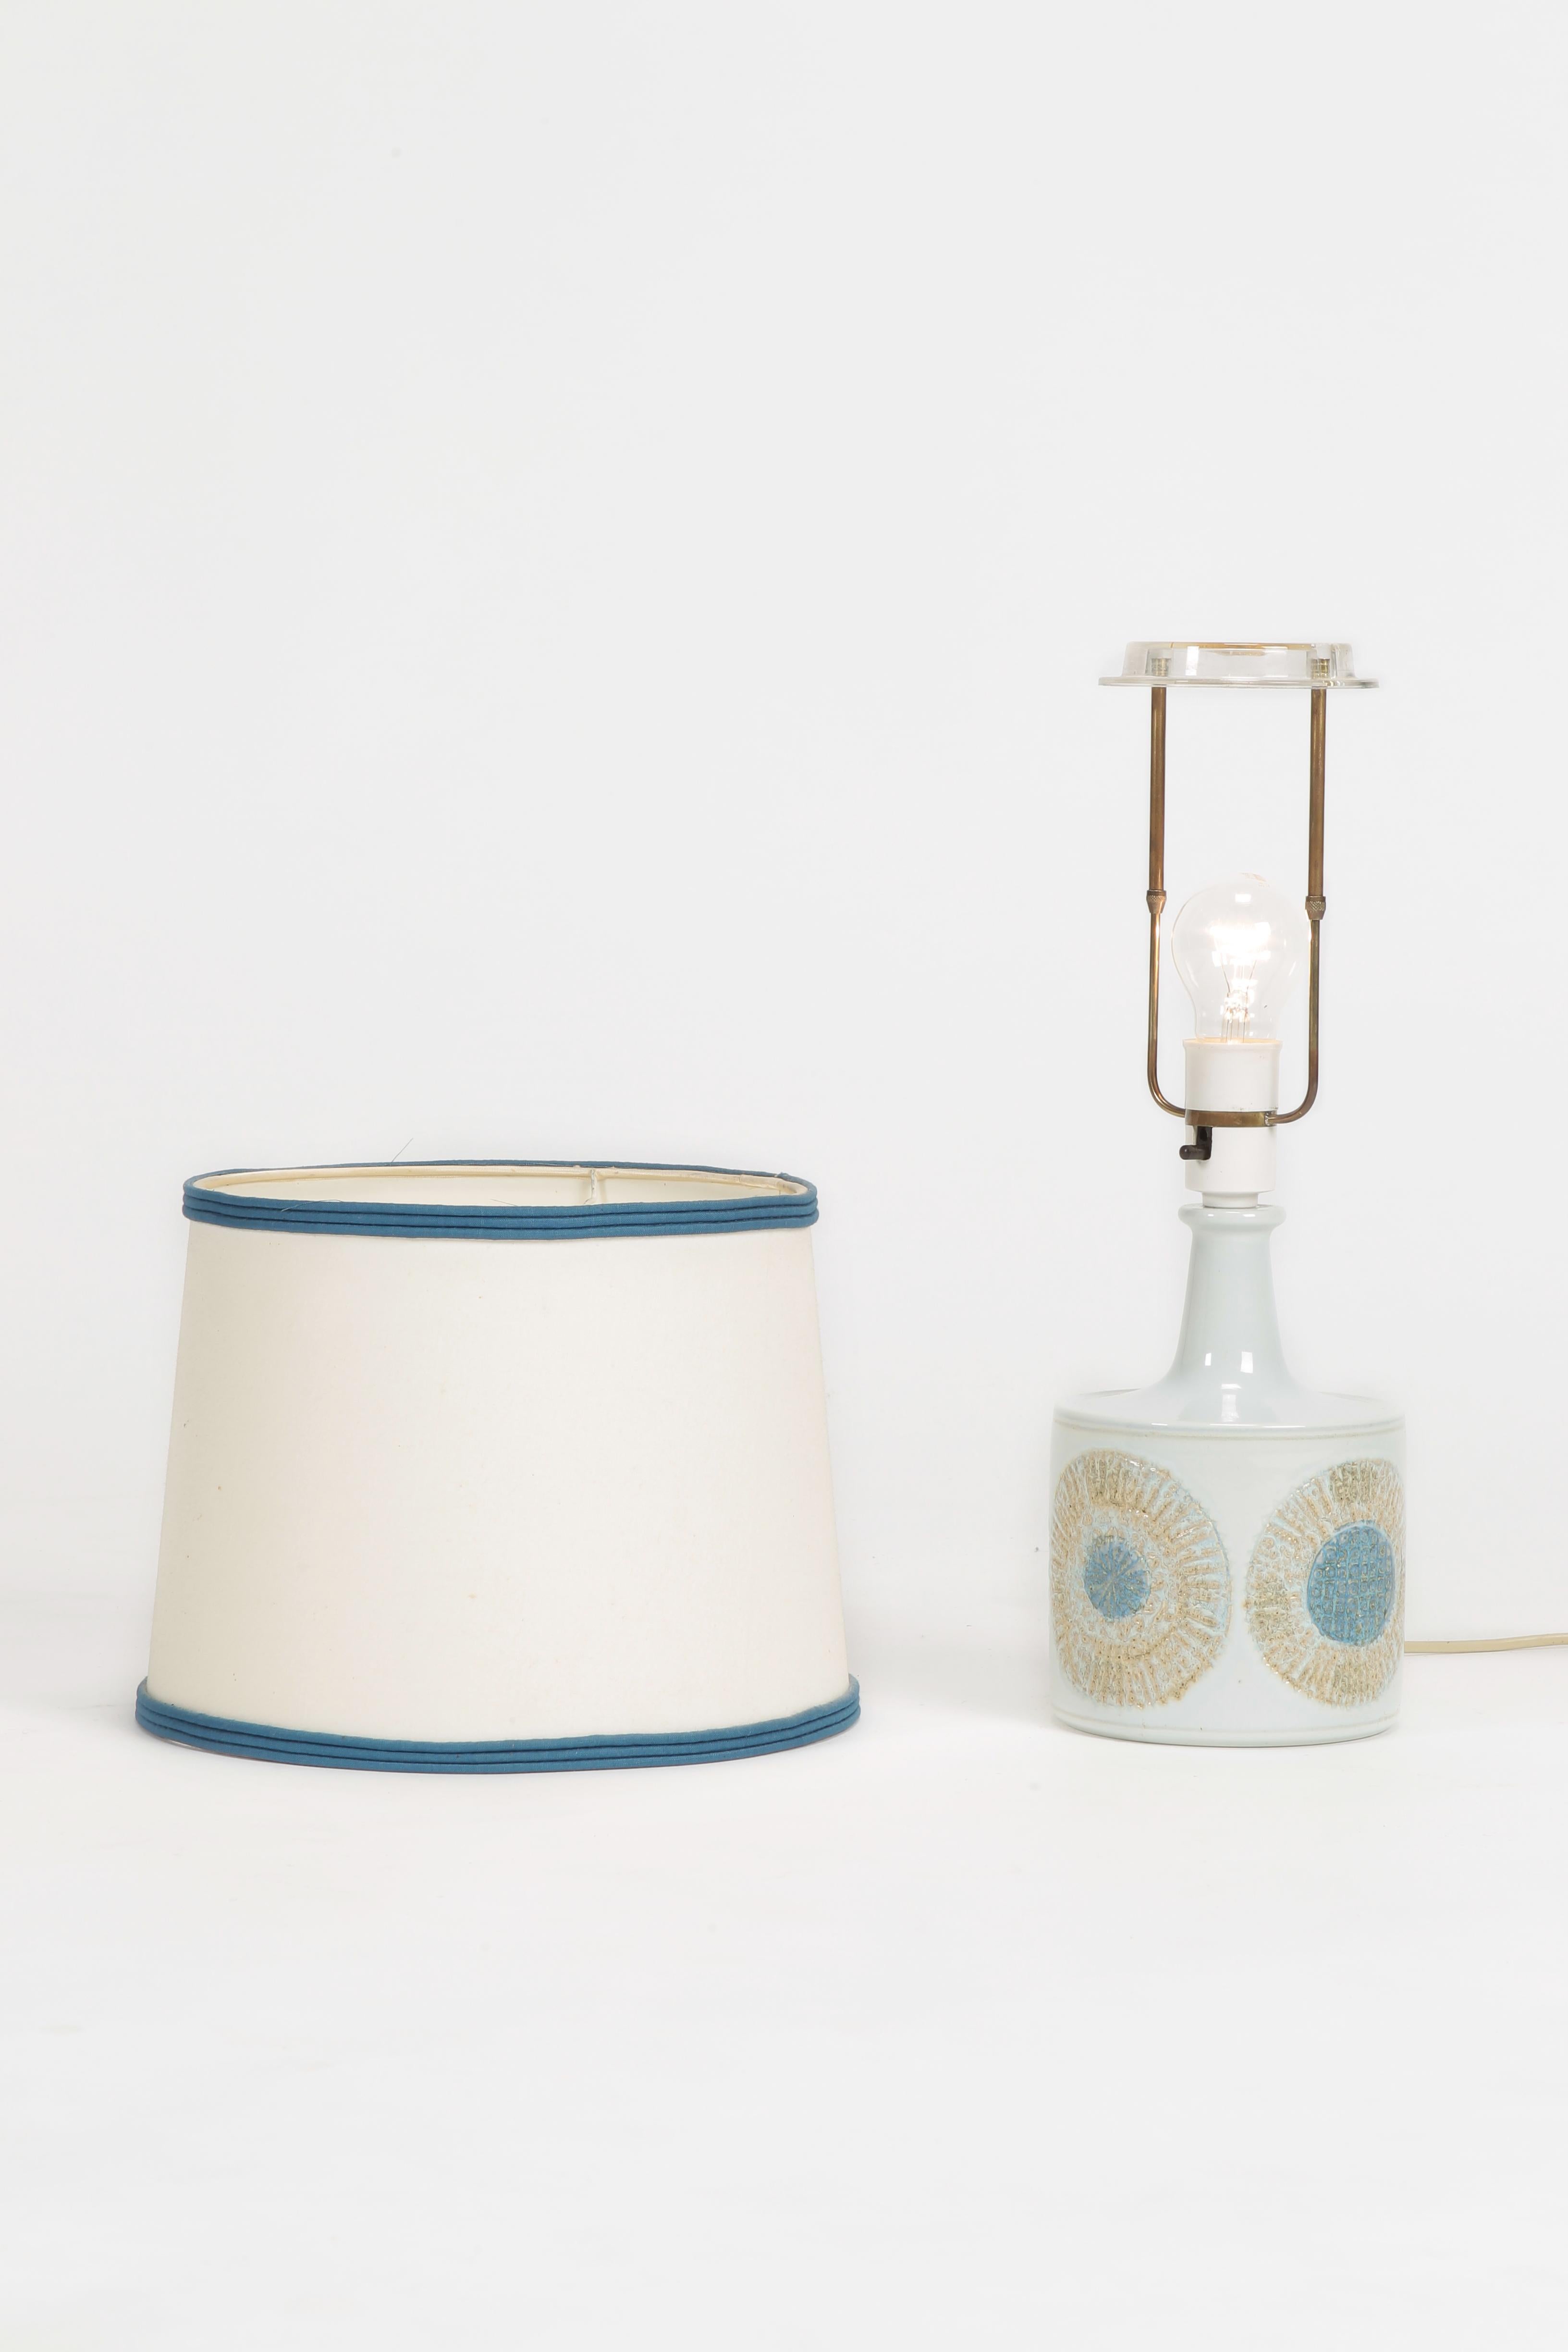 Mid-20th Century Kari Christensen Fog & Mørup Lamp, 1960s For Sale